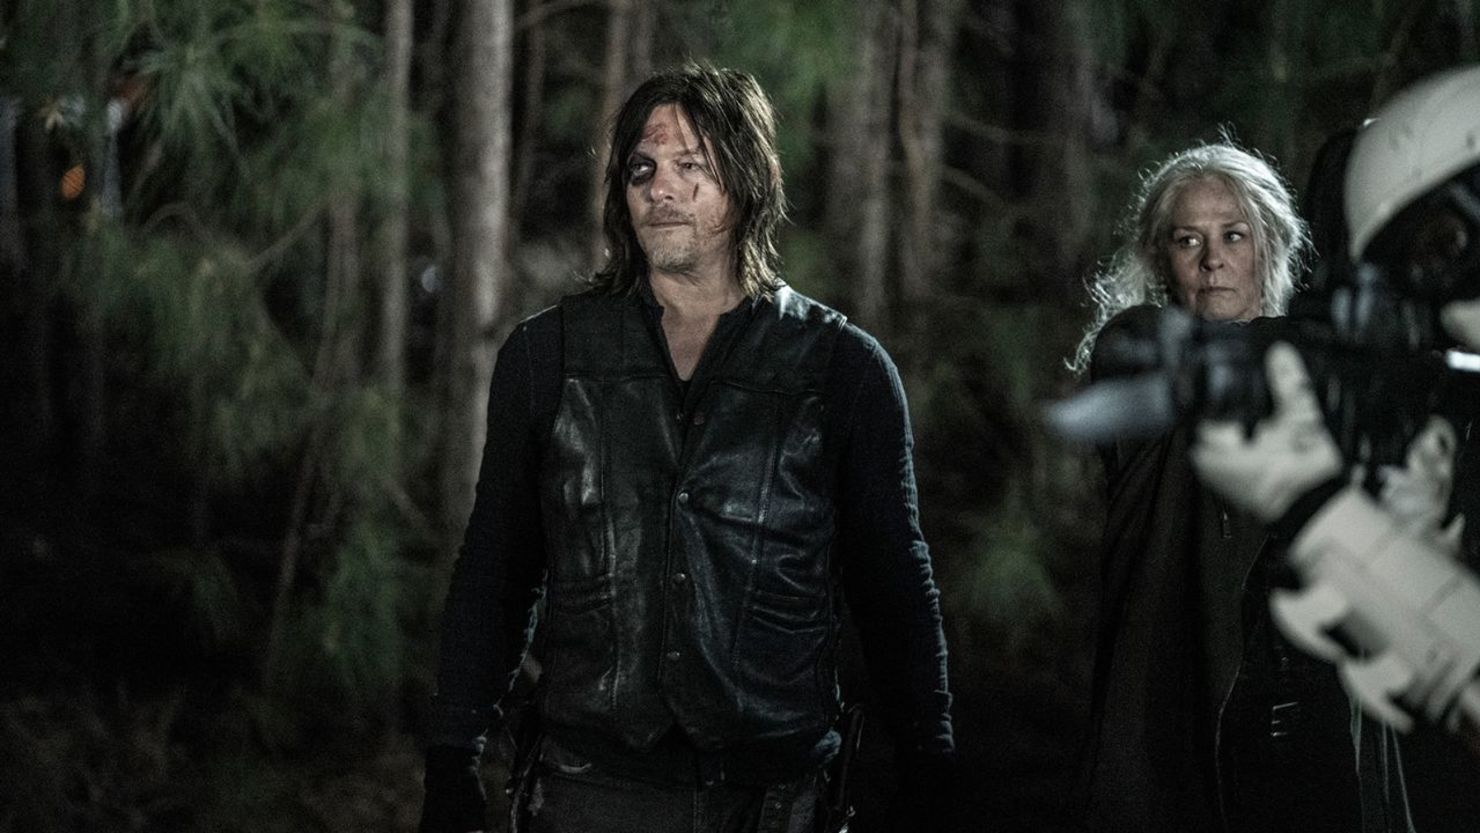 Norman Reedus y Melissa McBride en el final de la serie "The Walking Dead".
Jace Downs/AMC